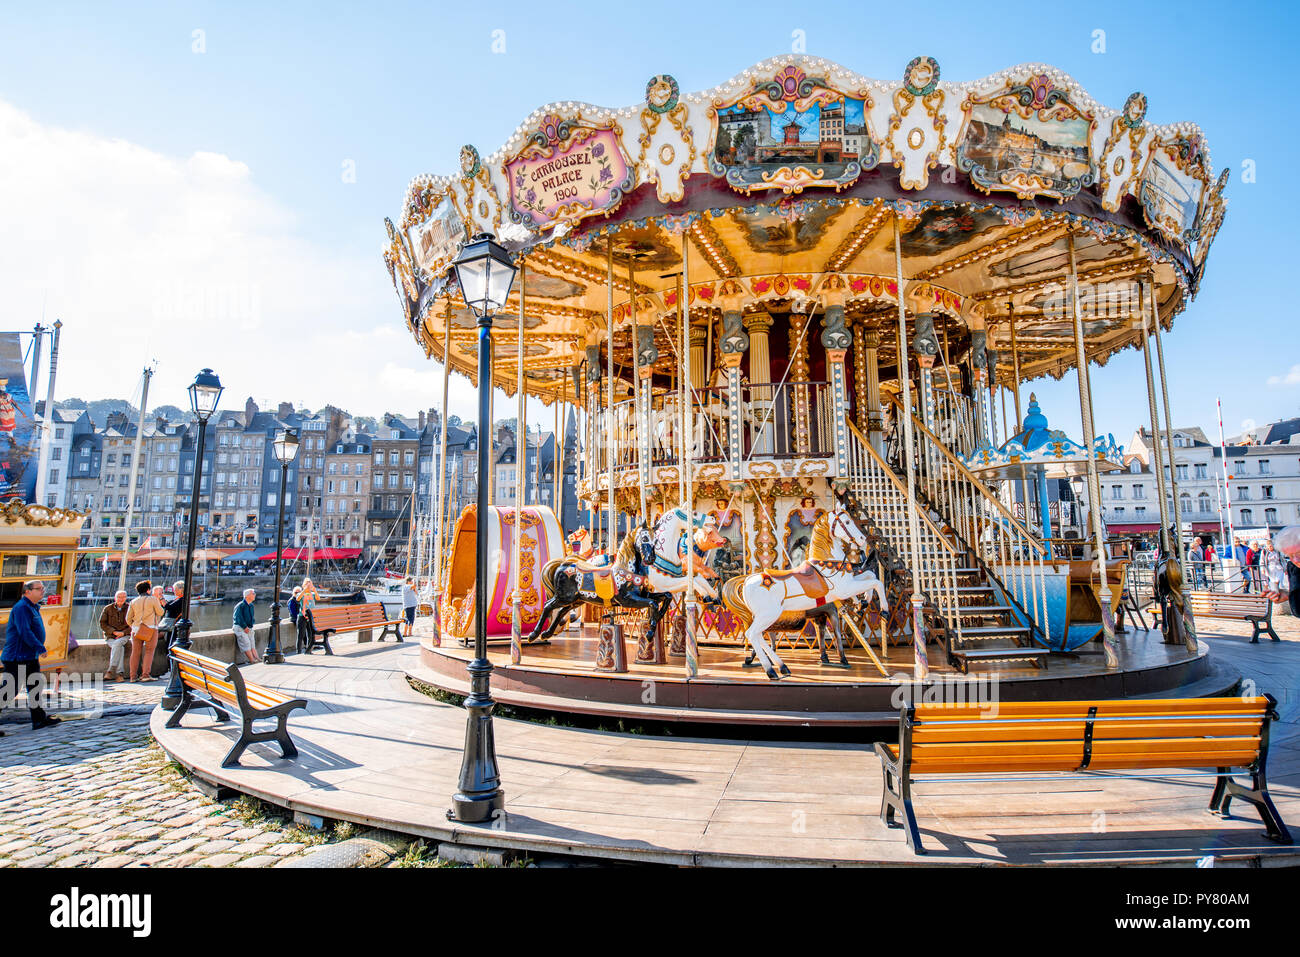 HONFLEUR, FRANCE - 06 septembre 2017 : Circus carousel près du port de Honfleur, célèbre ville française en Normandie Banque D'Images